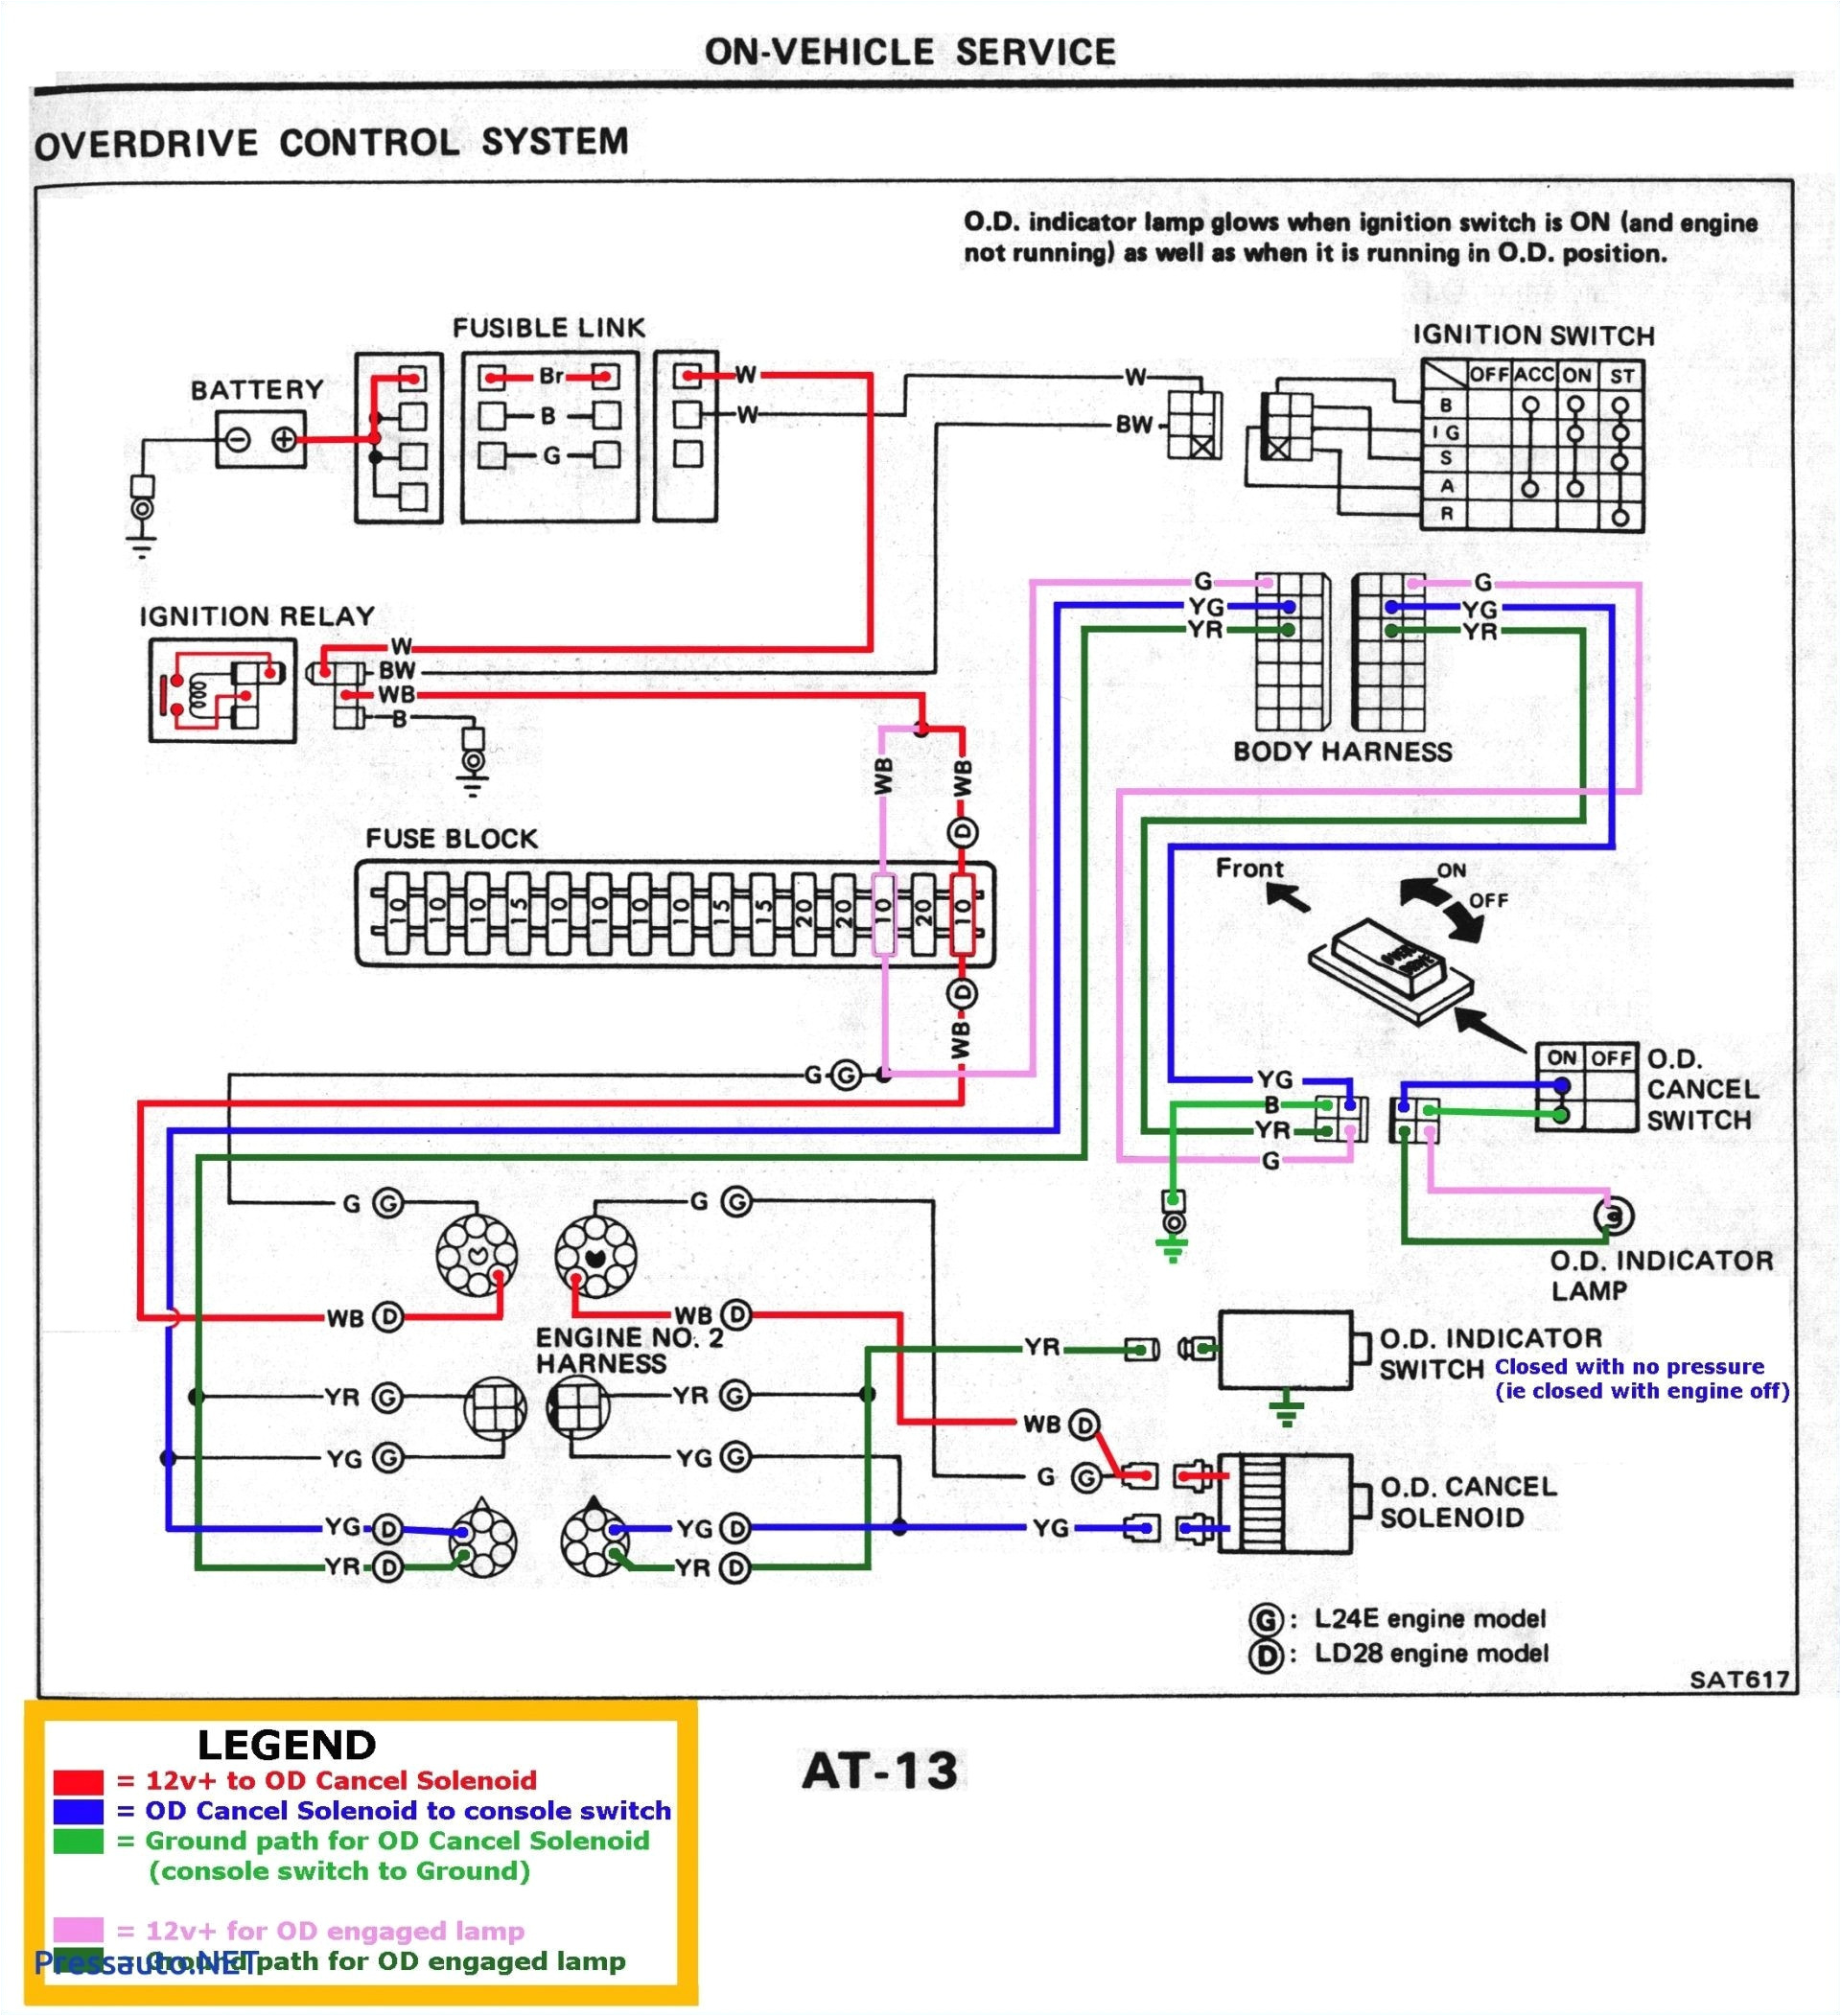 Bmw Logic 7 Amp Wiring Diagram Logic 7 Amp Diagram Schema Wiring Diagram